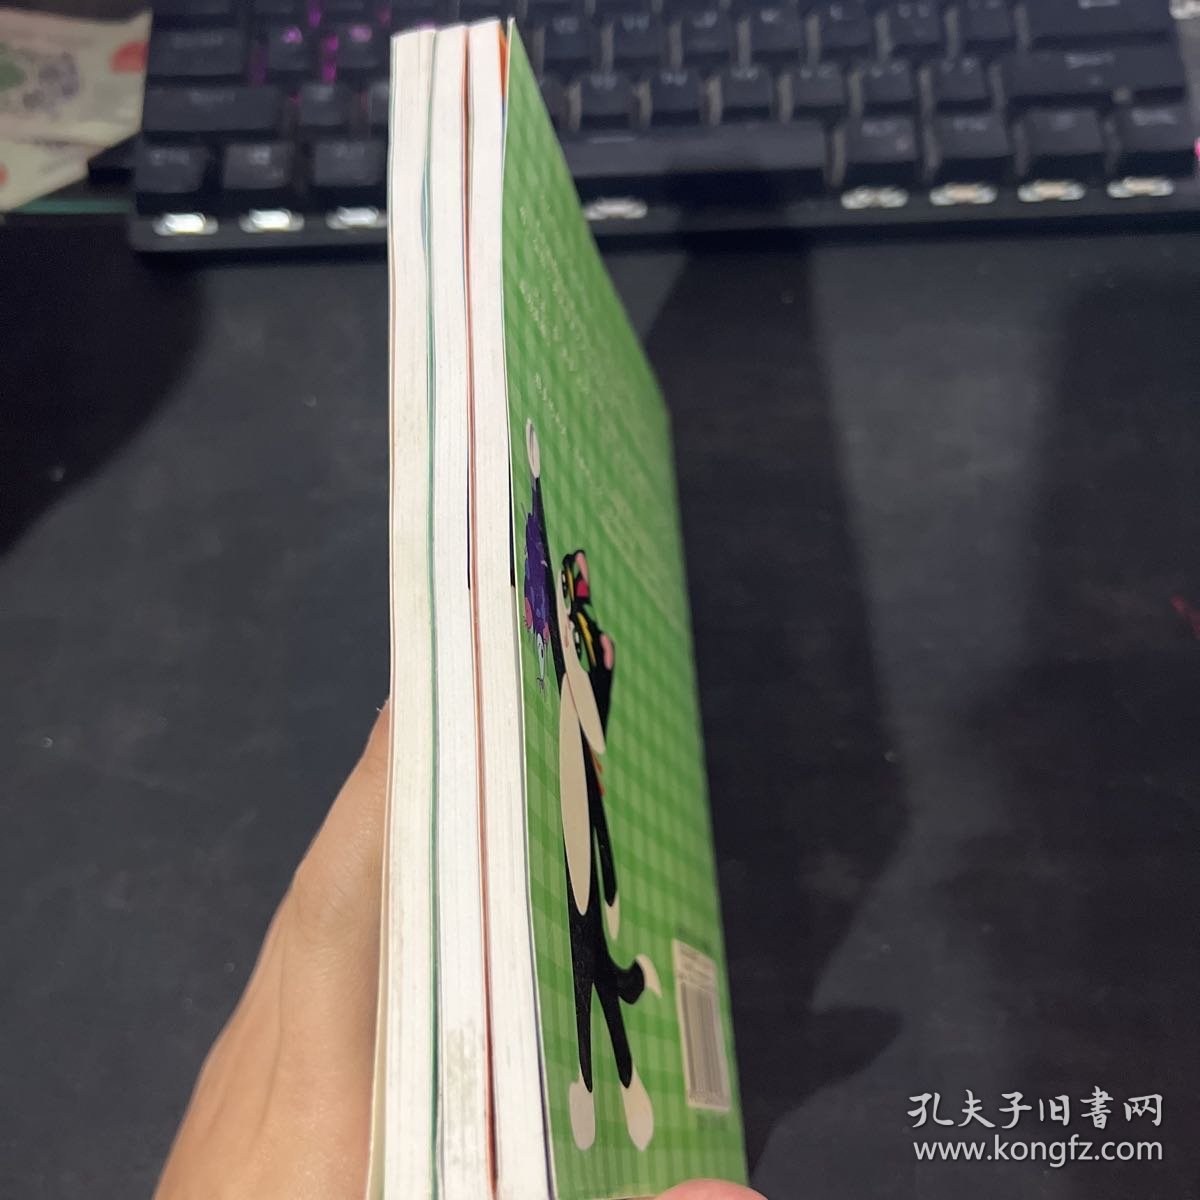 中国原创经典动漫系列 3册合售